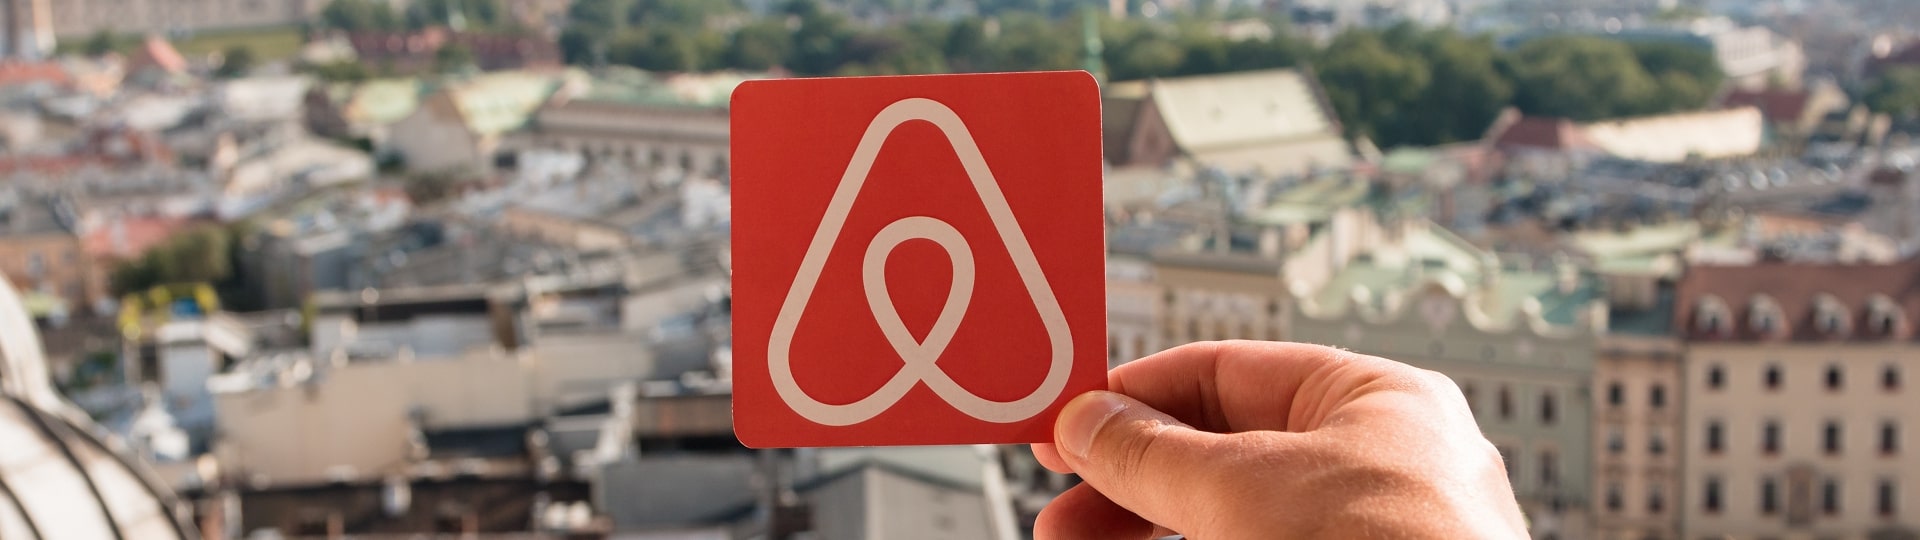 Společnost Airbnb výrazně snížila čtvrtletní ztrátu